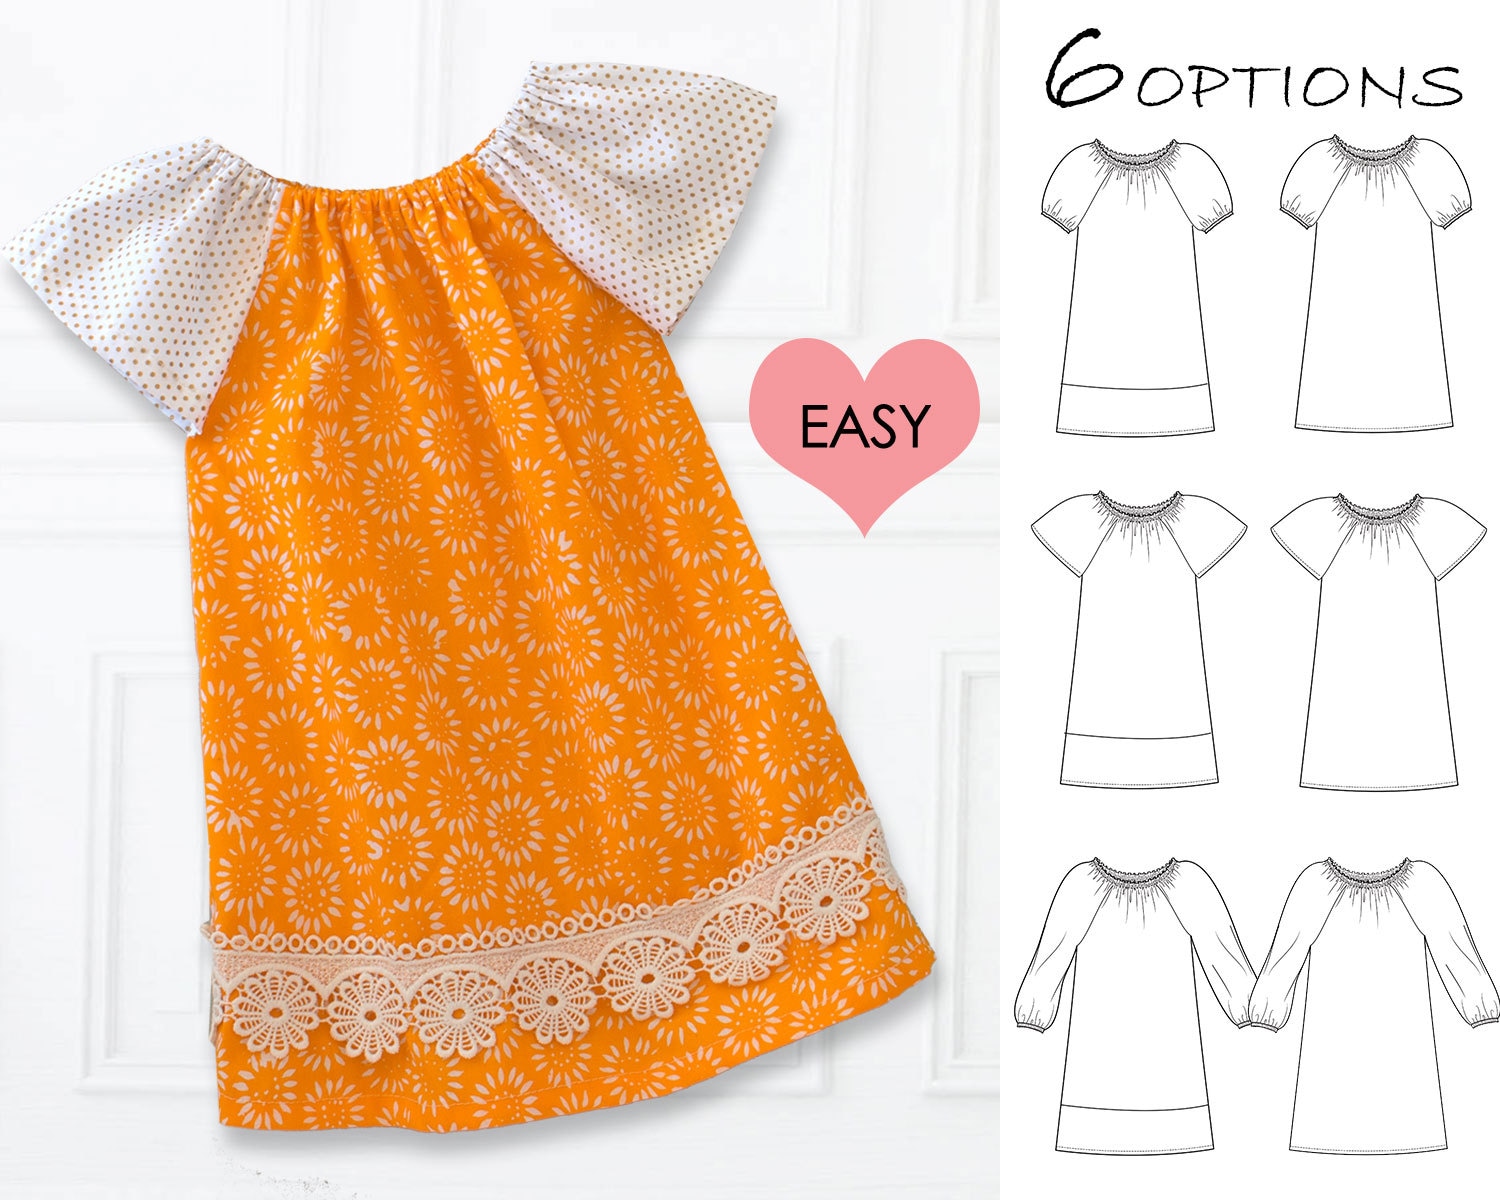 Easy Dress Pattern - Free 'Wear Everywhere' Knit Dress | So Sew Easy